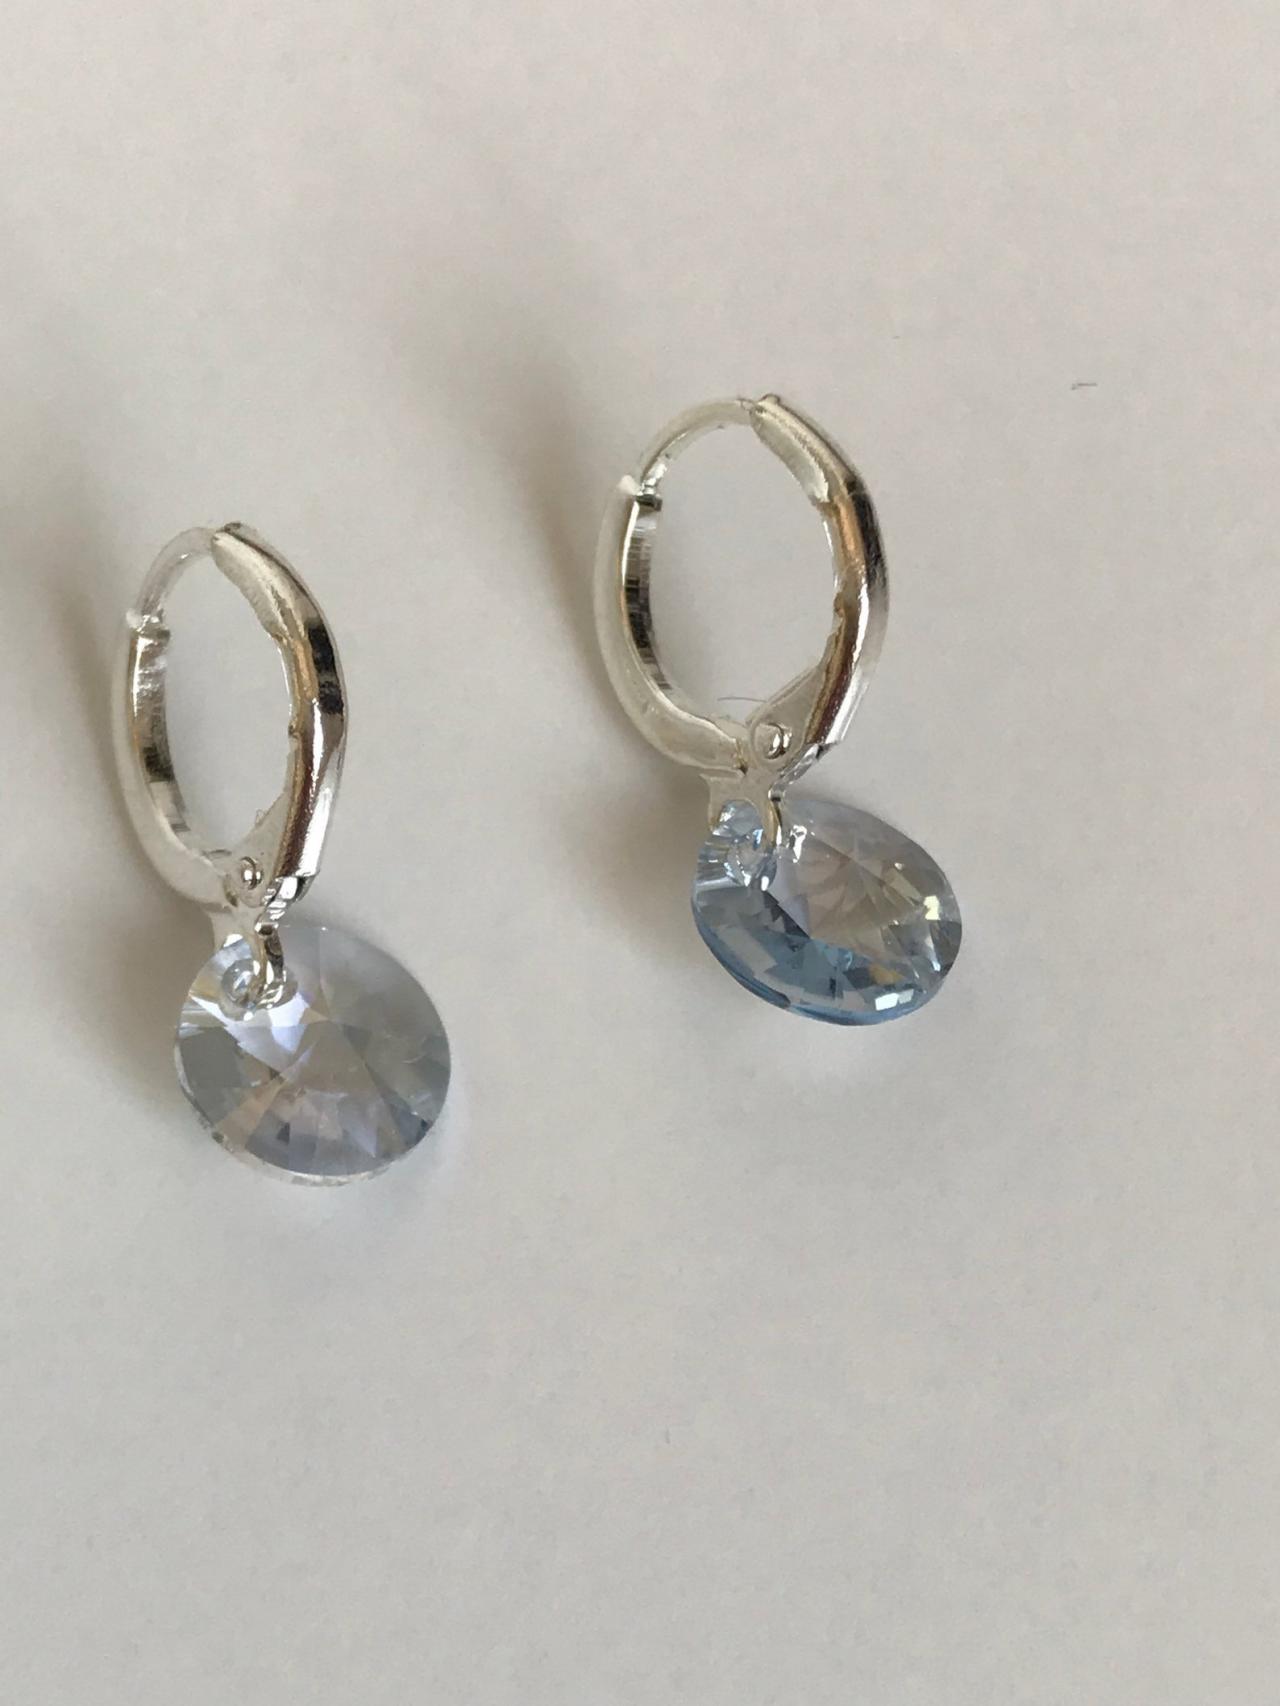 Swarovski Dangle Earrings 156 - Silver Swarovski Earrings Womenswear Trendy Accessories Chic Gift Boho